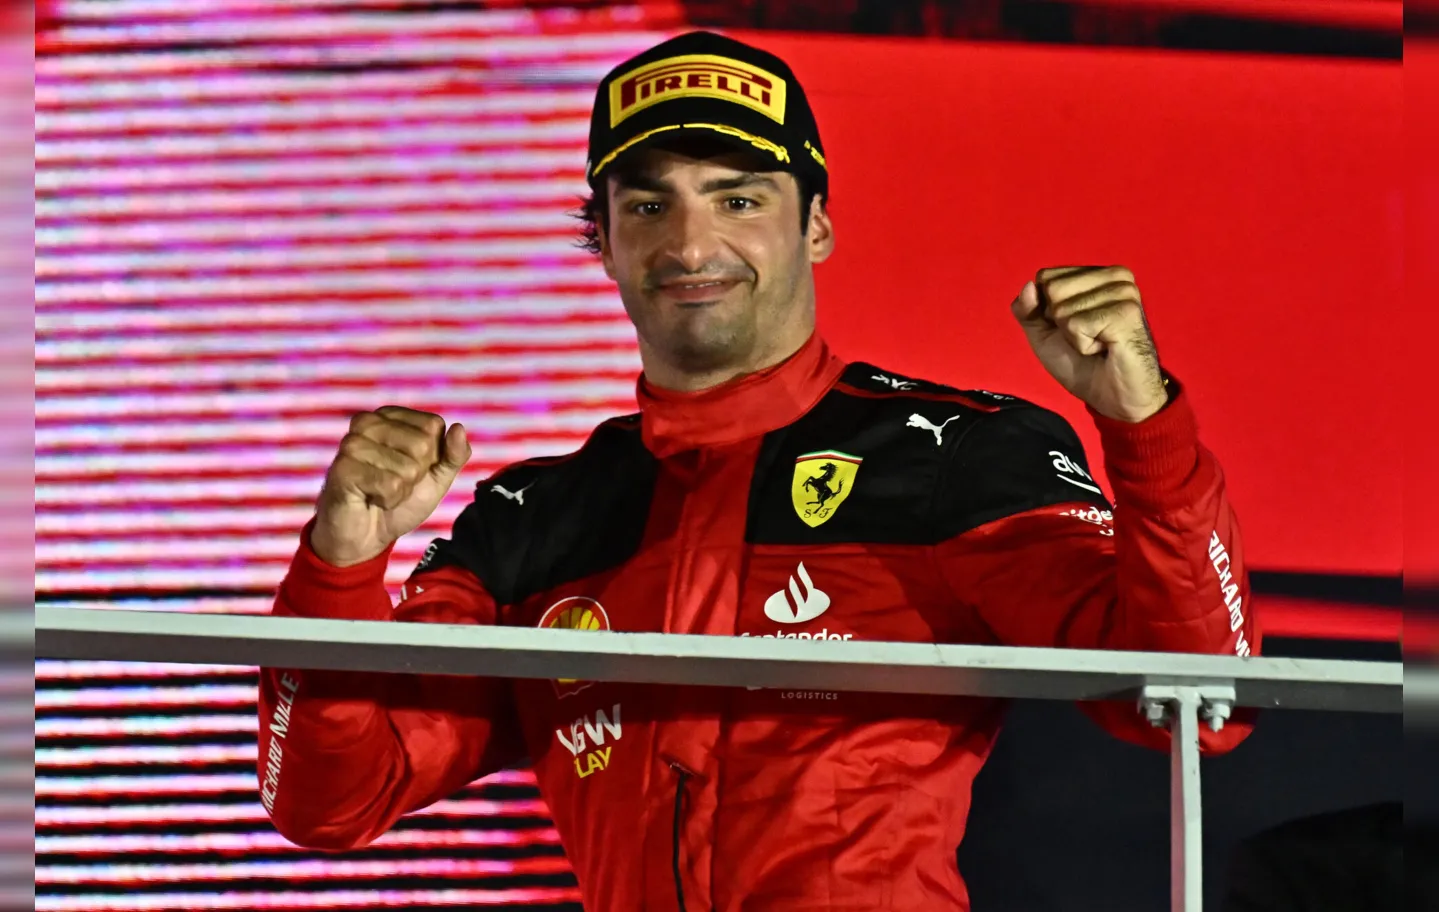 A Ferrari interrompeu a hegemonia da Red Bull, que havia triunfado até agora nas quatorze corridas realizadas nesta temporada, além da última em 2022, em Abu Dhabi